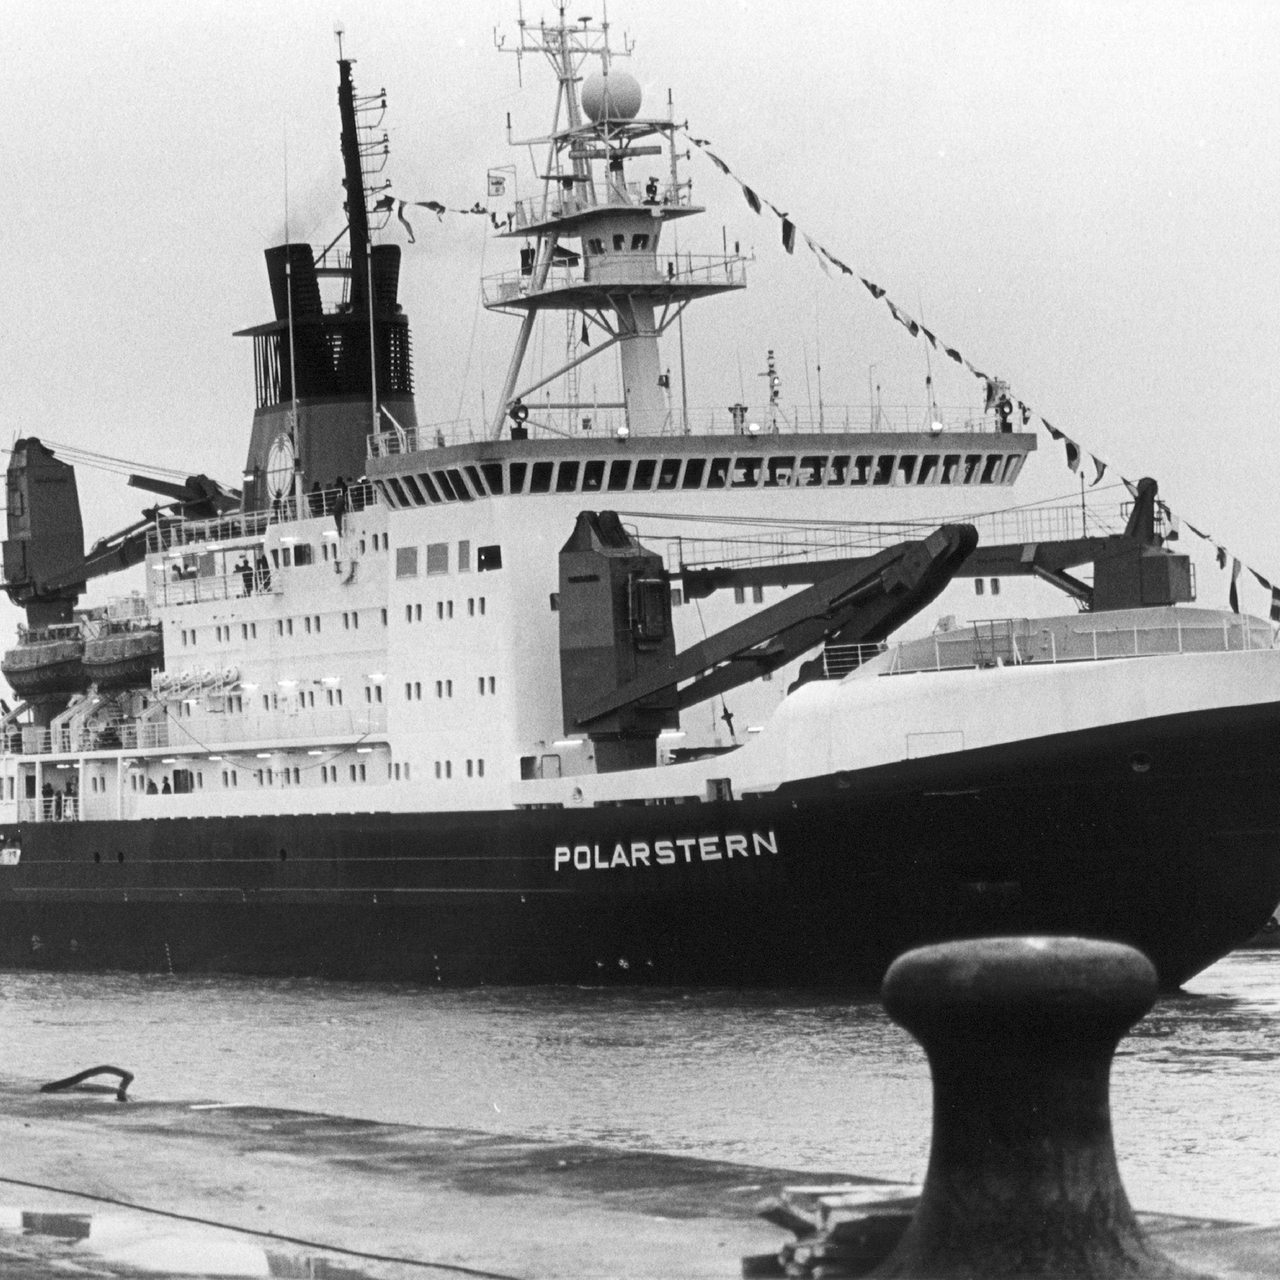 Das Polarforschungsschiff "Polarstern" wurde am 9. Dezember 1982 in Bremerhaven in Dienst gestellt. 